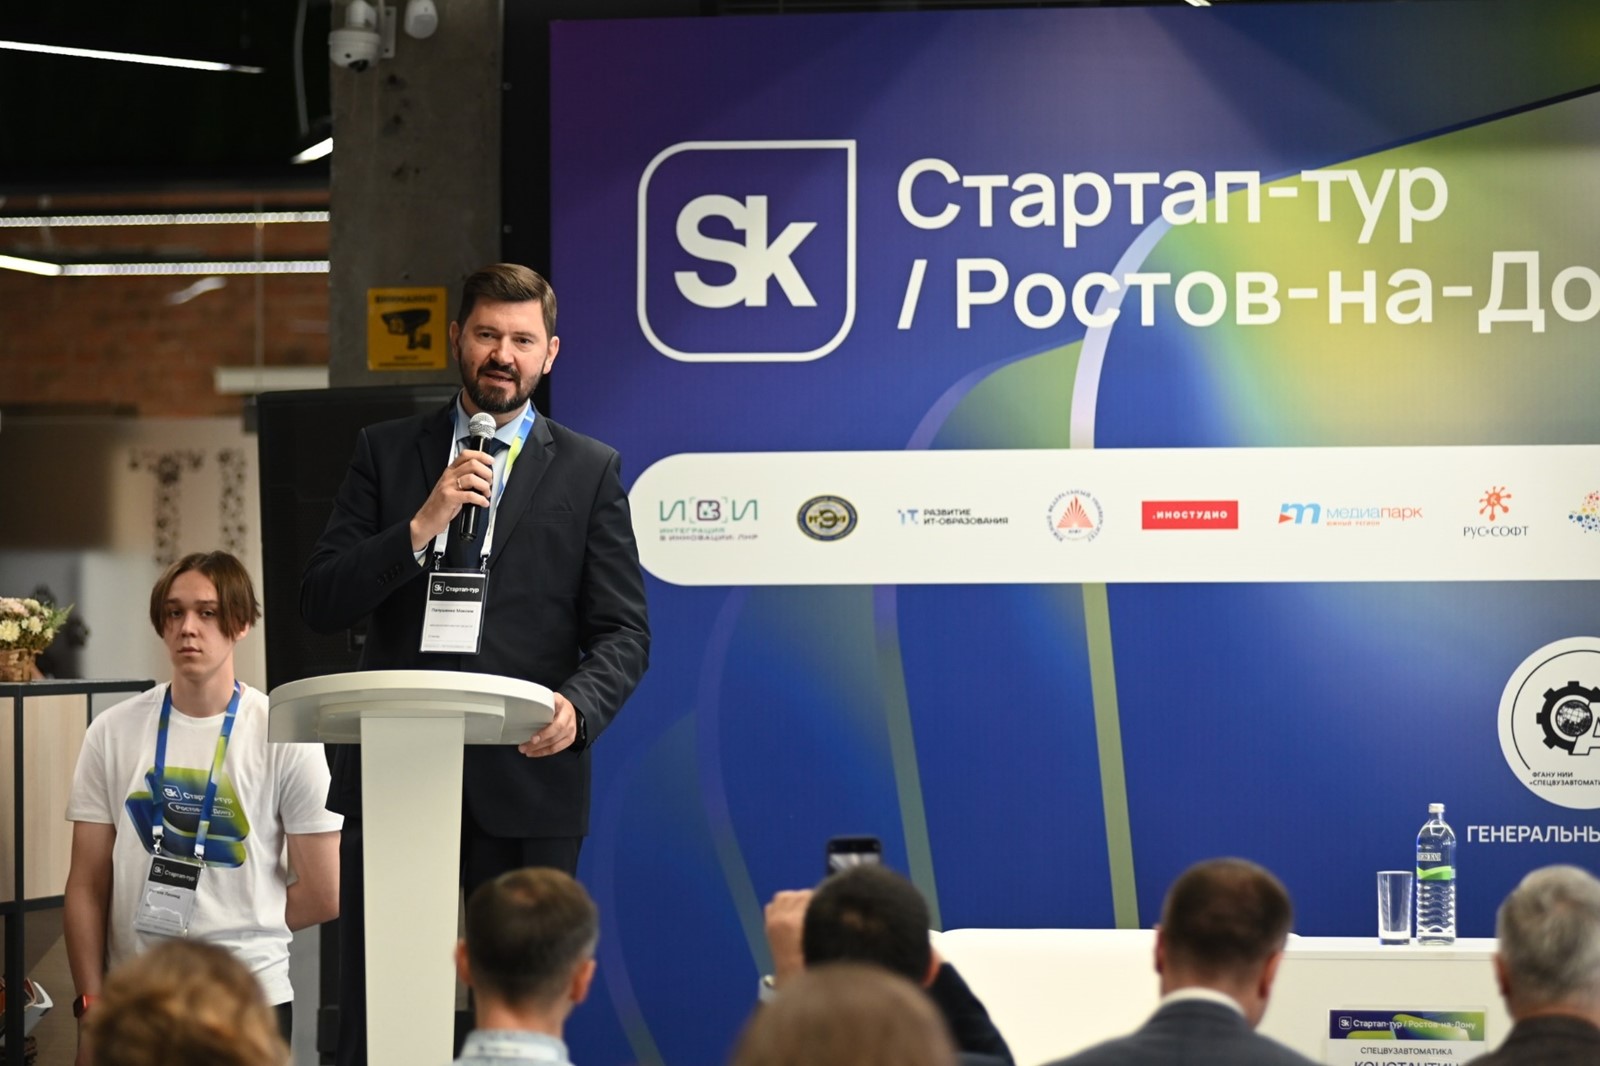 Ростовская область приняла стартап-тур инноваторов «Региональный форсаж»